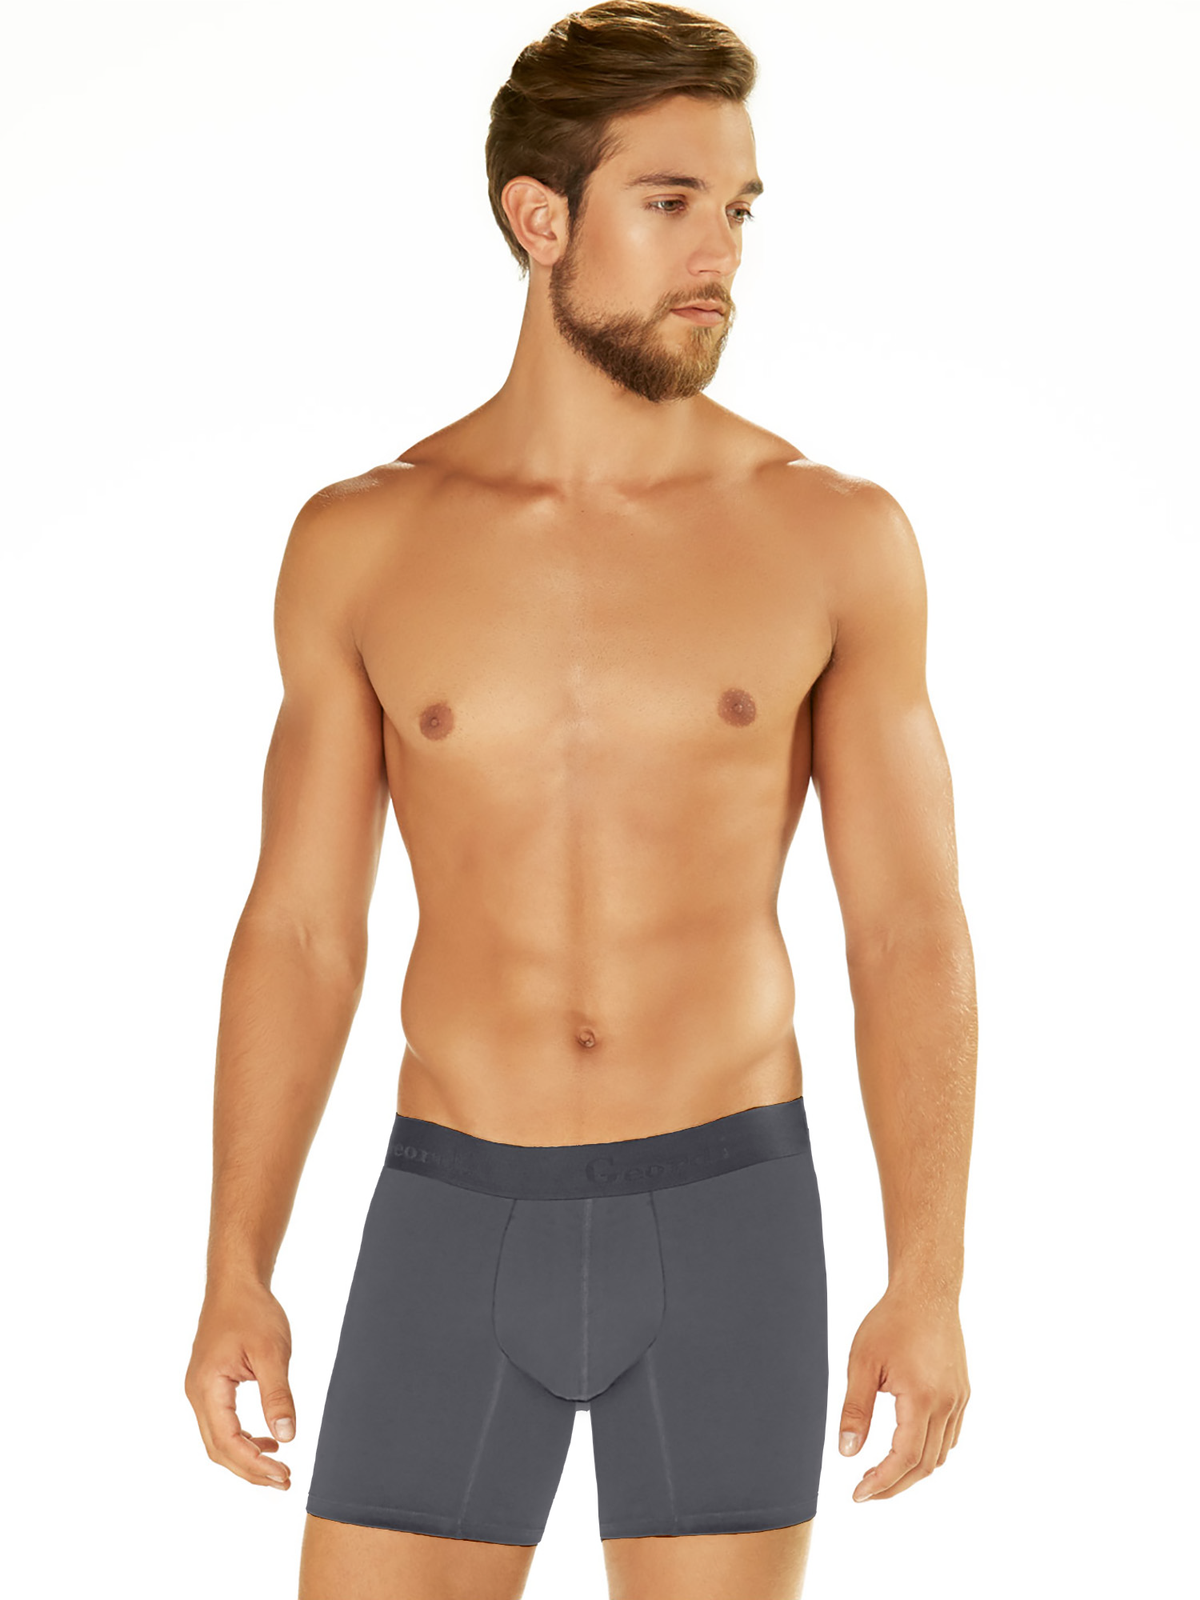 Geordi 5172 Boxer Briefs underwear for men